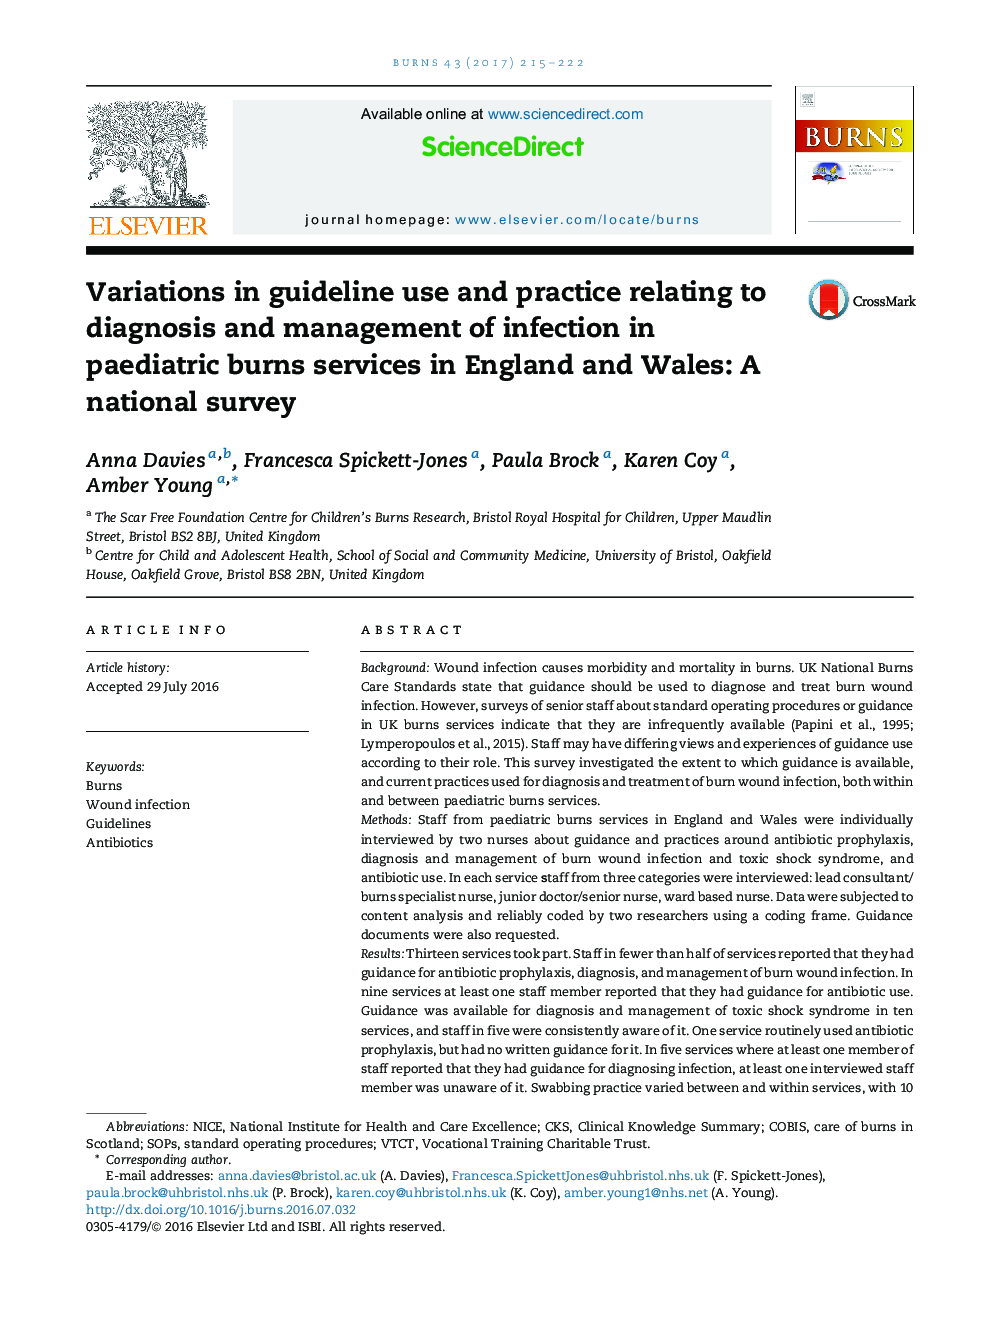 تغییرات در استفاده از دستورالعمل و عمل مربوط به تشخیص و مدیریت عفونت در خدمات سوختگی اطفال در انگلستان و ولز: یک نظرسنجی ملی 